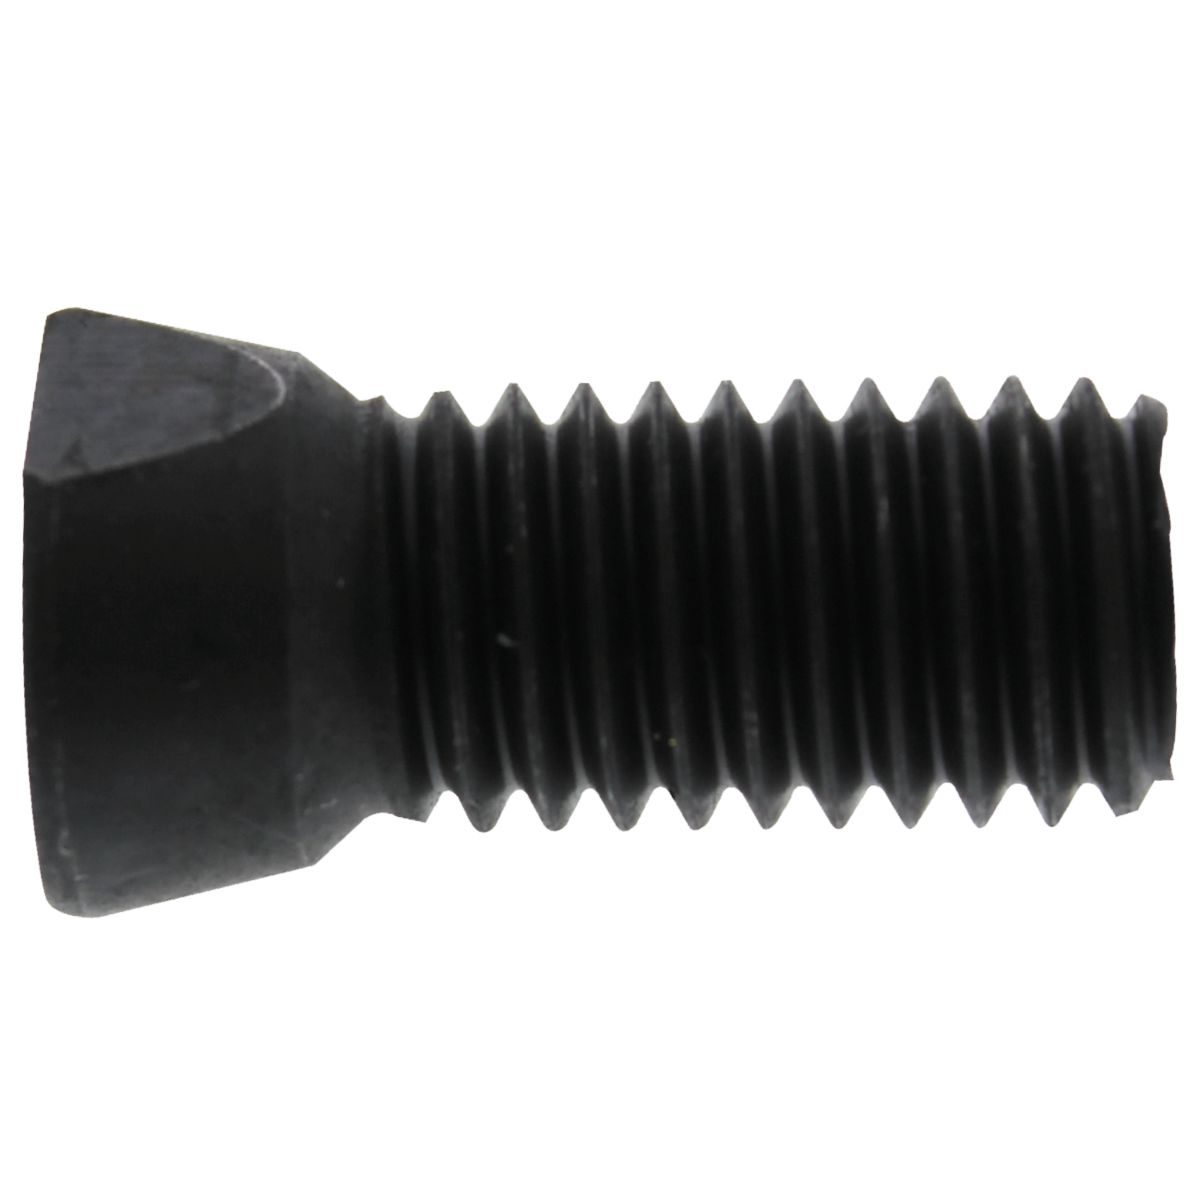 1/2"-13 x 1-1/4" Clipped Head Plow Bolts — SAE J429 Grade 5, Coarse Thread, Plain, 50/PKG